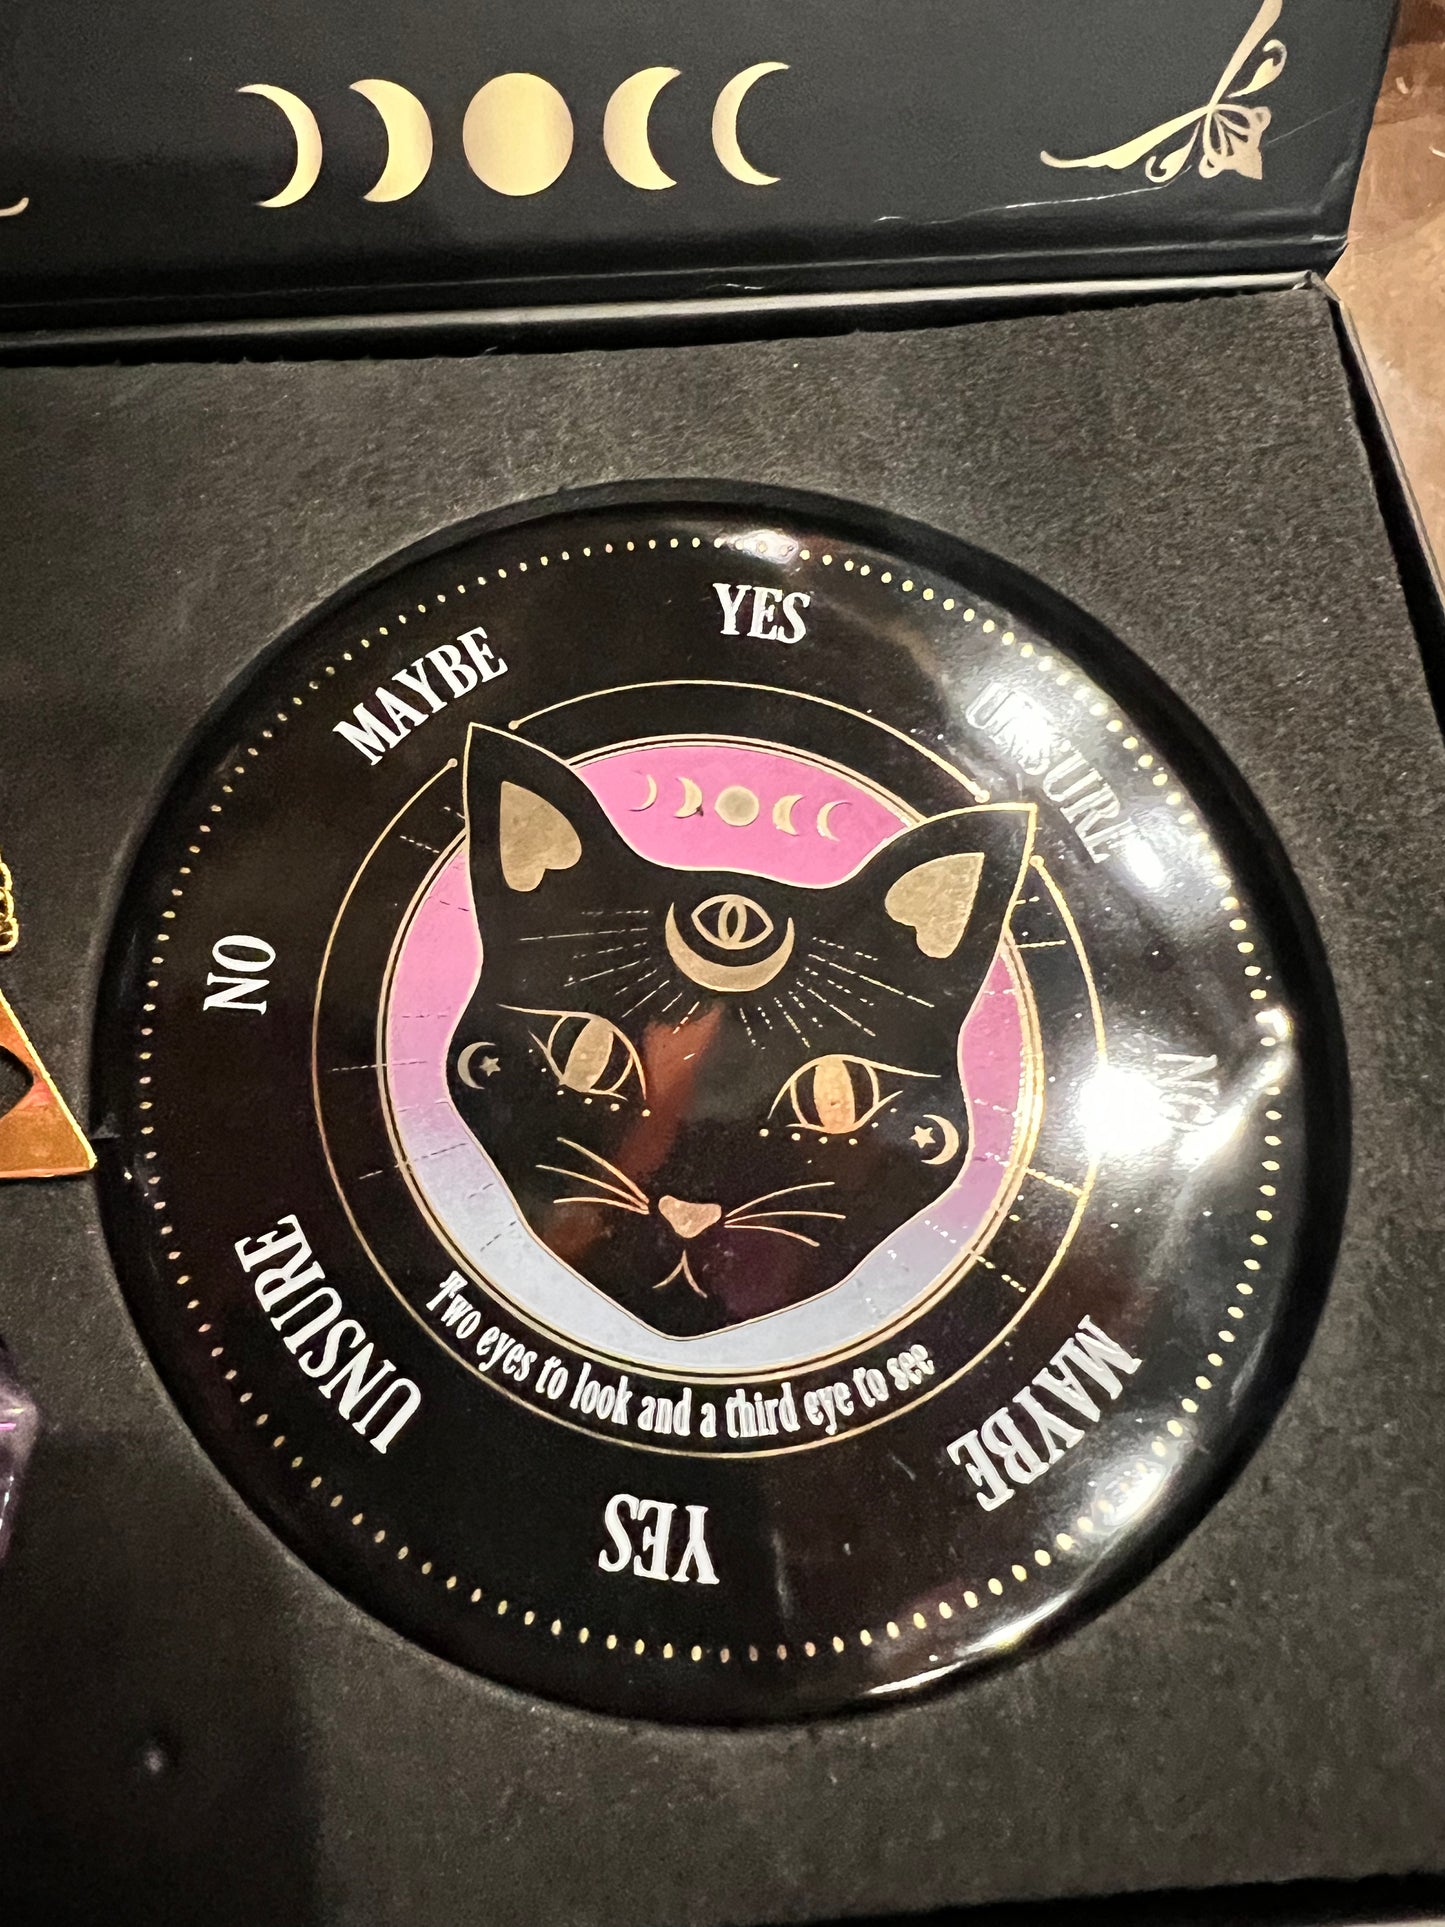 Cat Pendulum Divination Kit